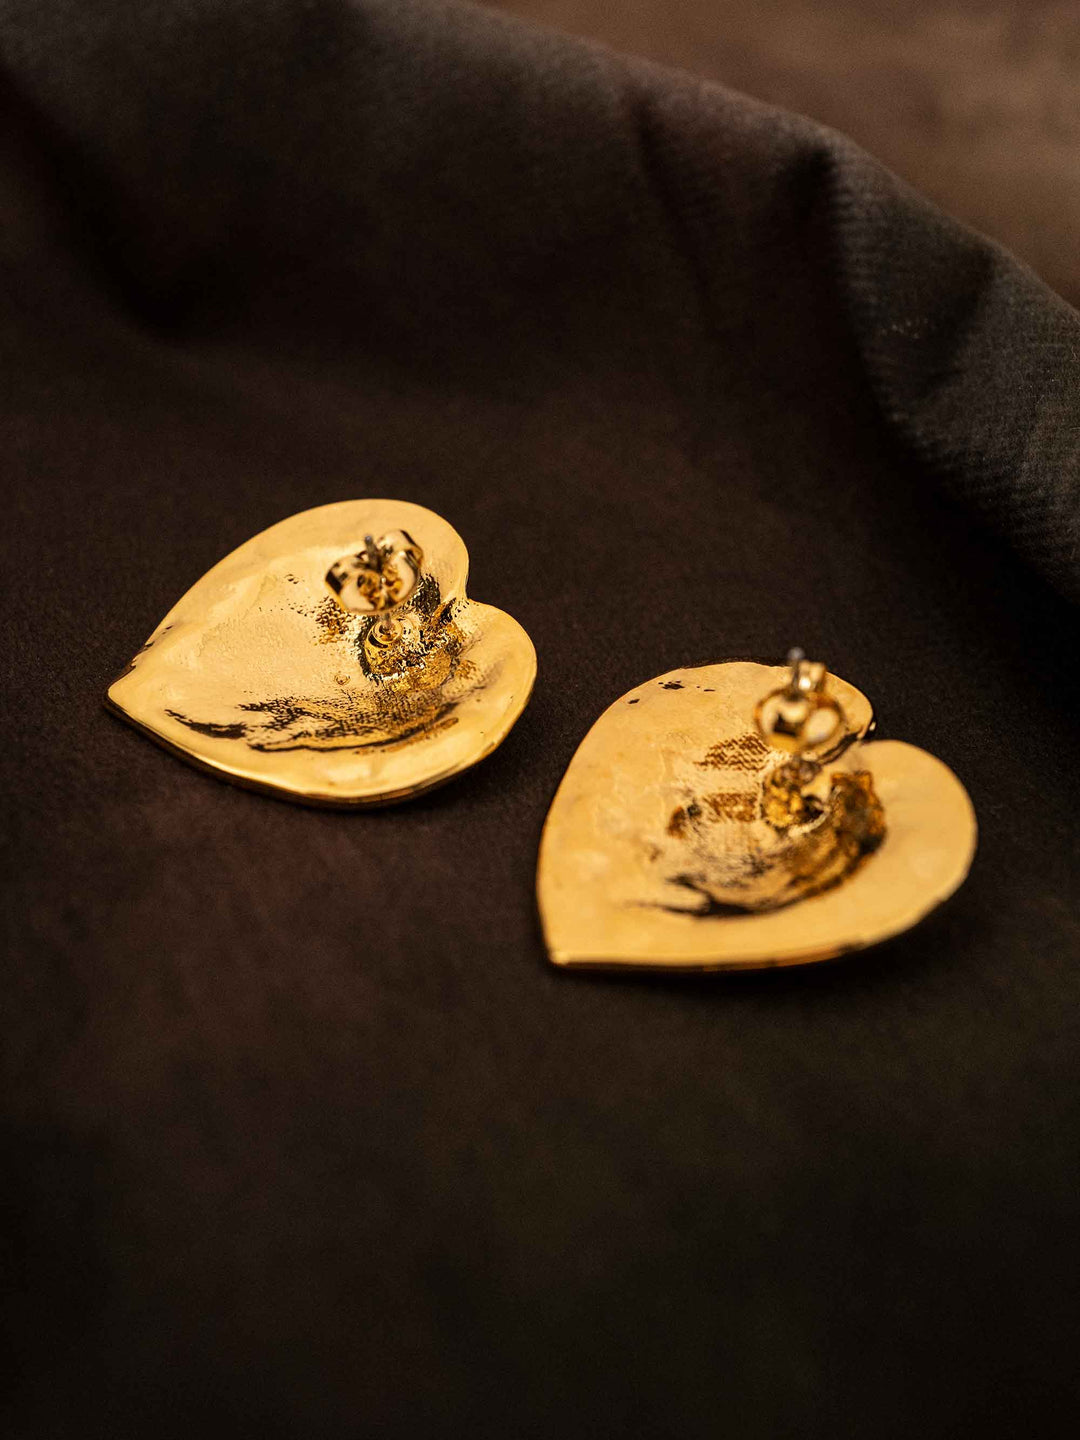 One Gold Heart Earrings